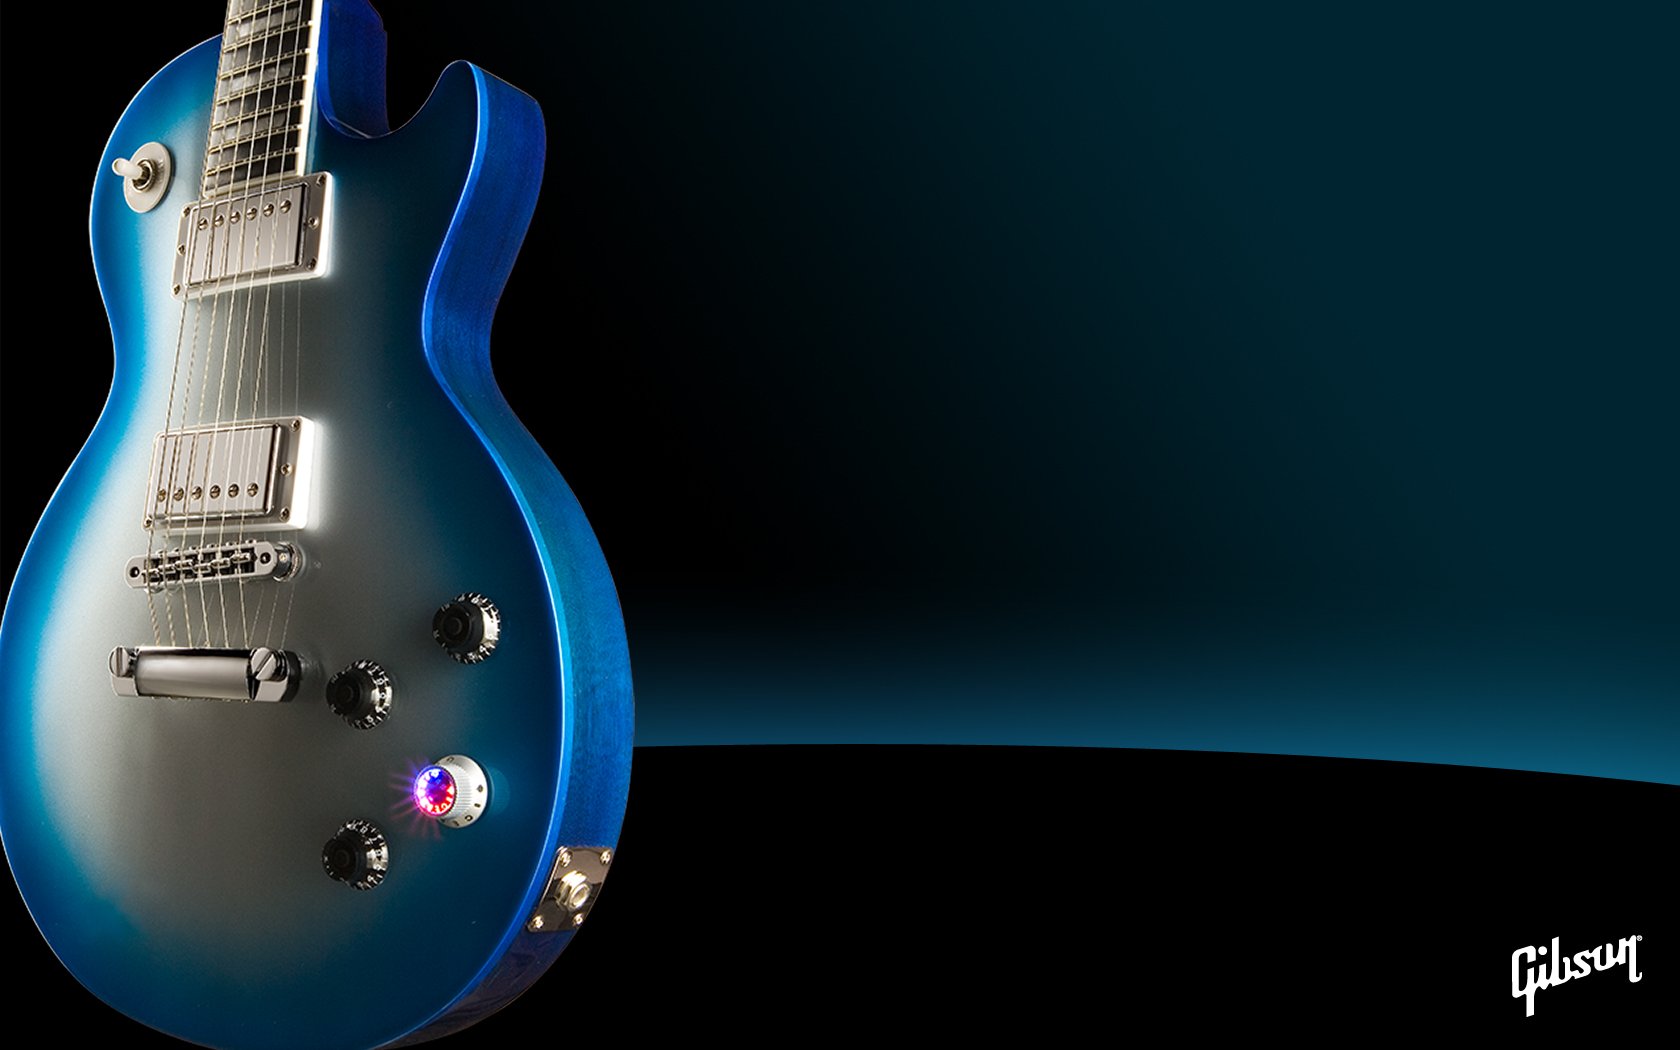 Gibson Guitar Wallpapers for Desktop - WallpaperSafari